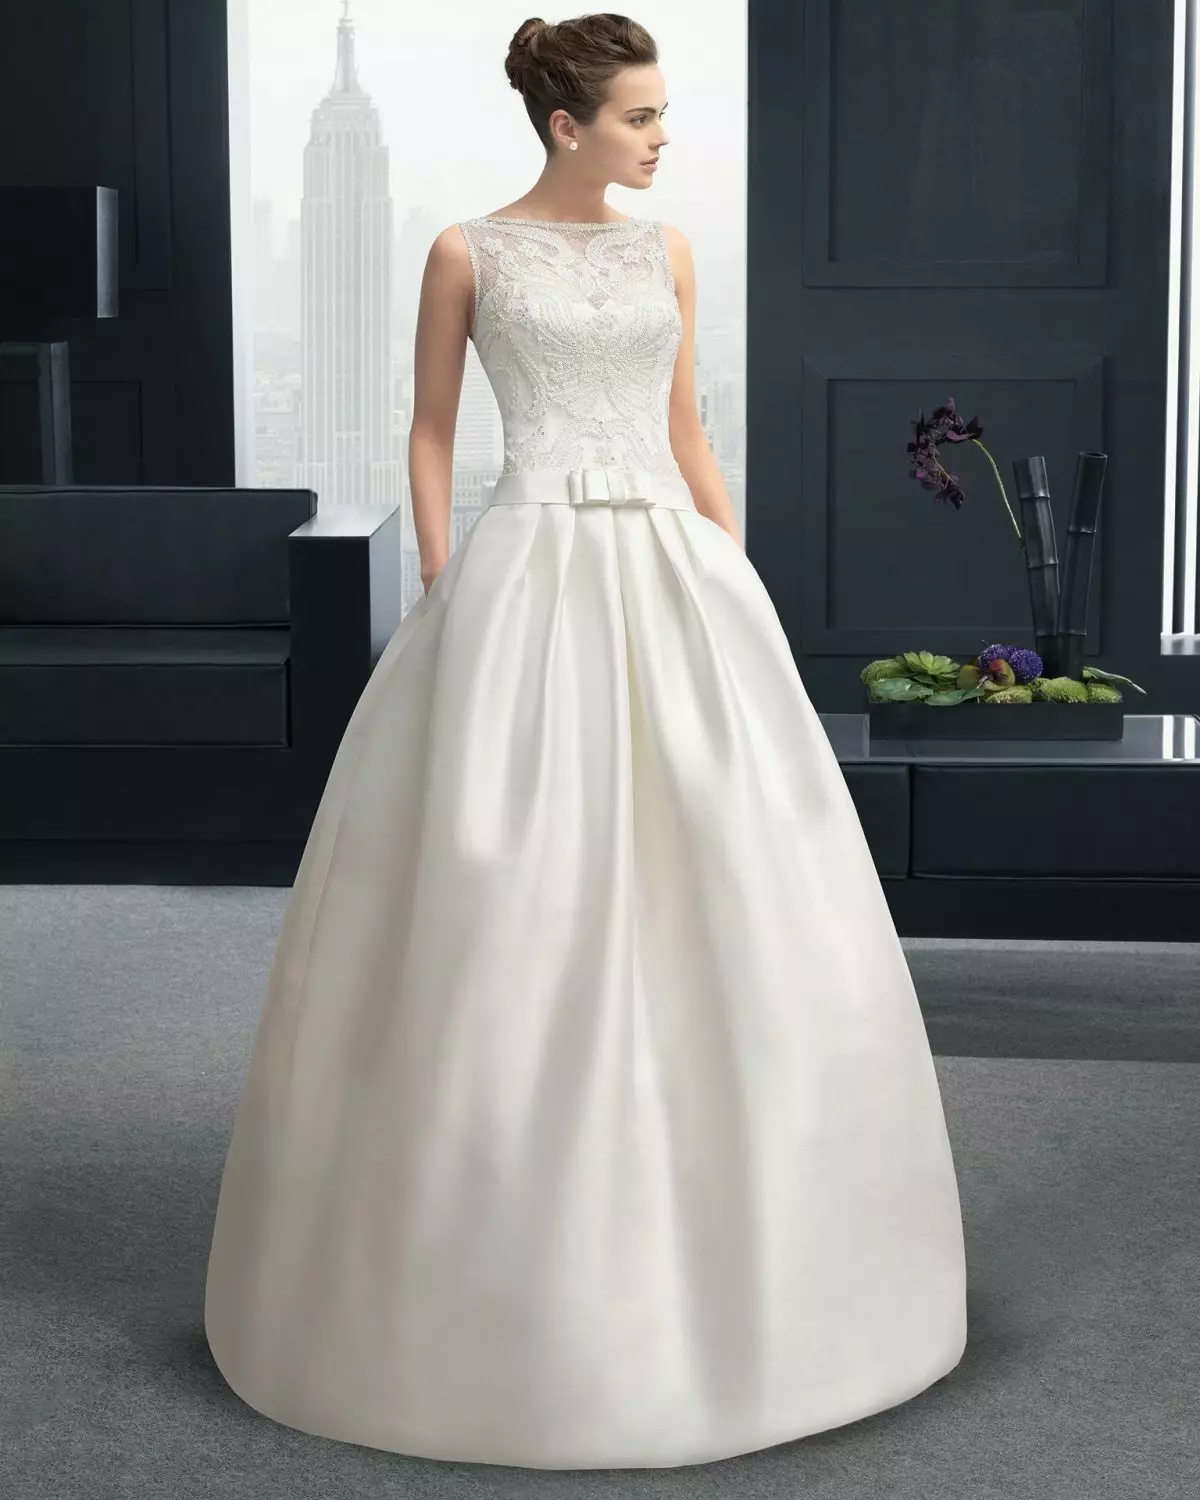 Lush wedding dress na may puntas corset.